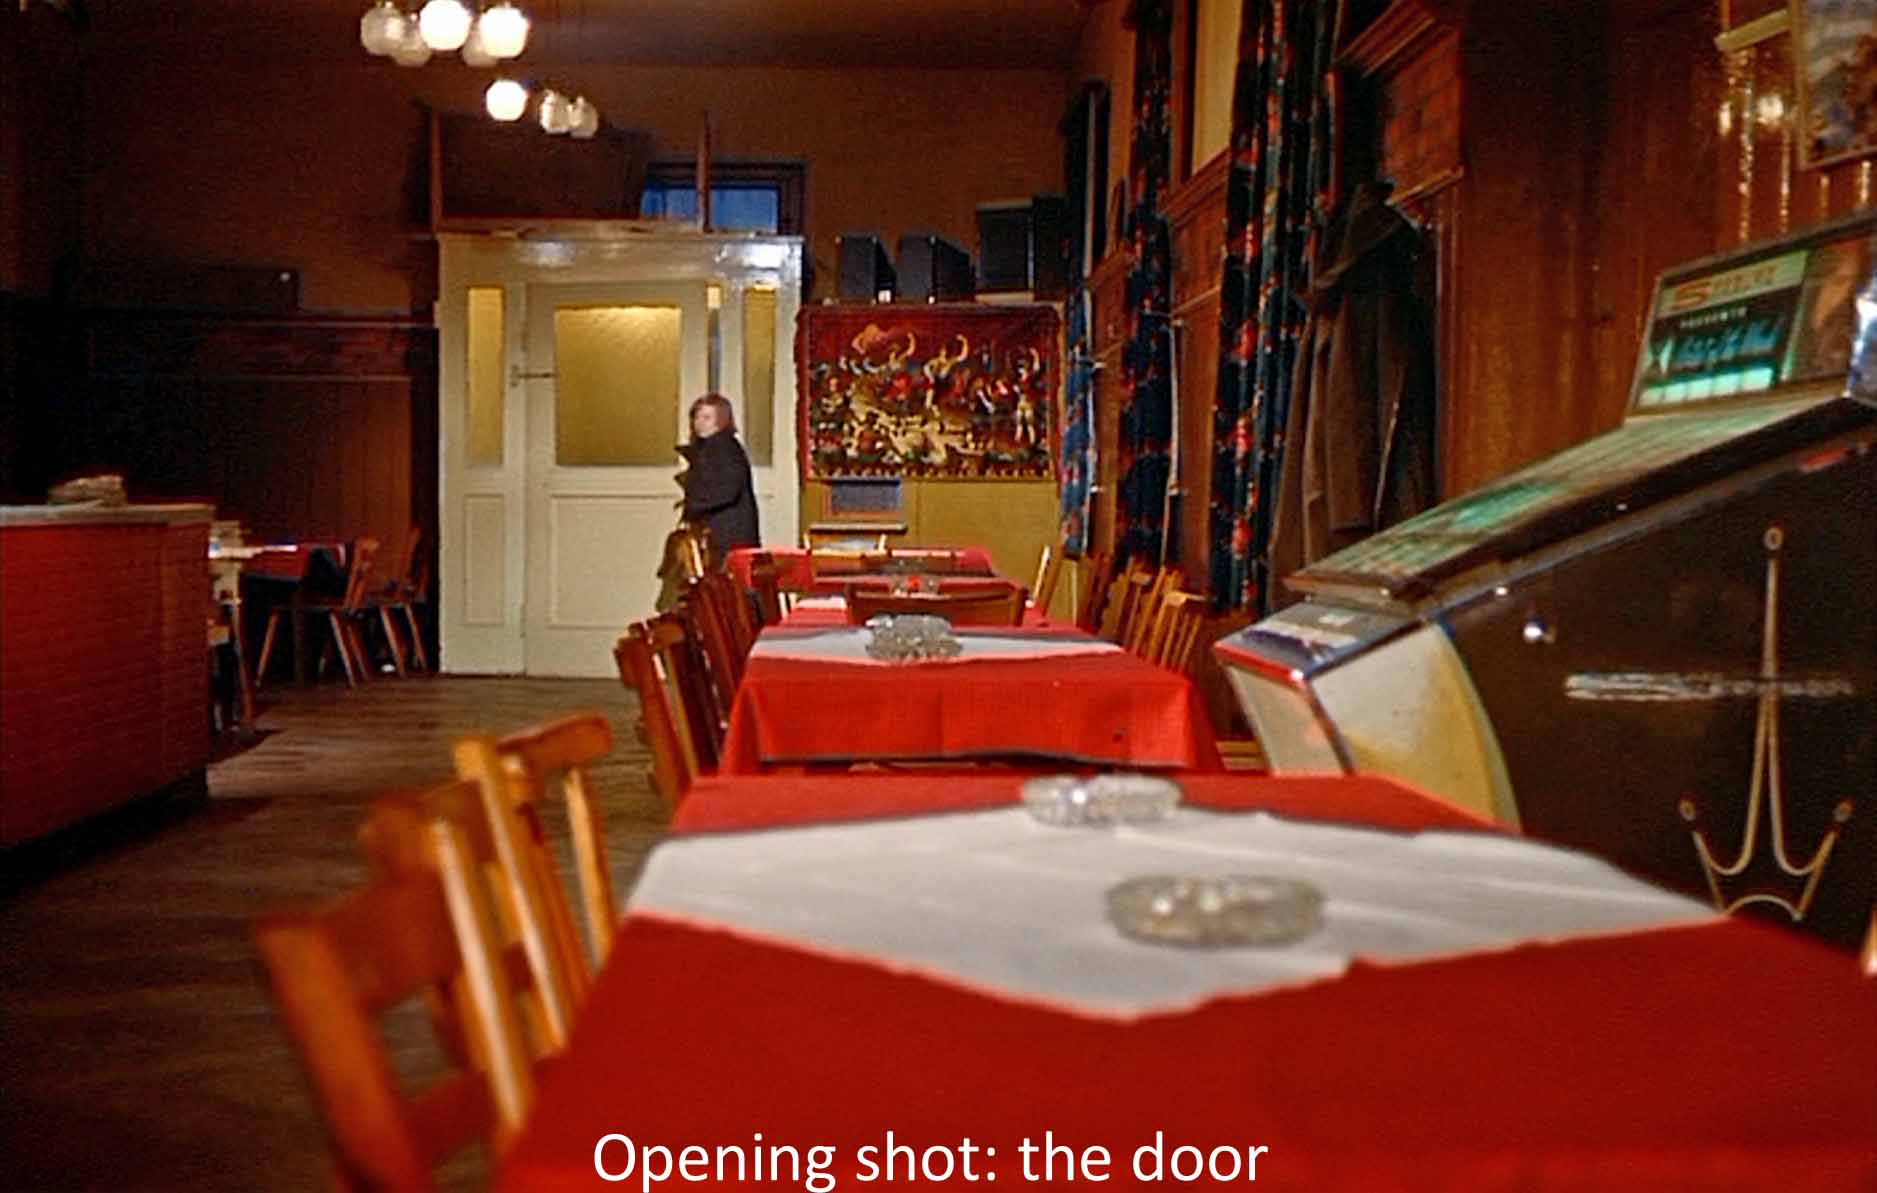 Opening shot: the door